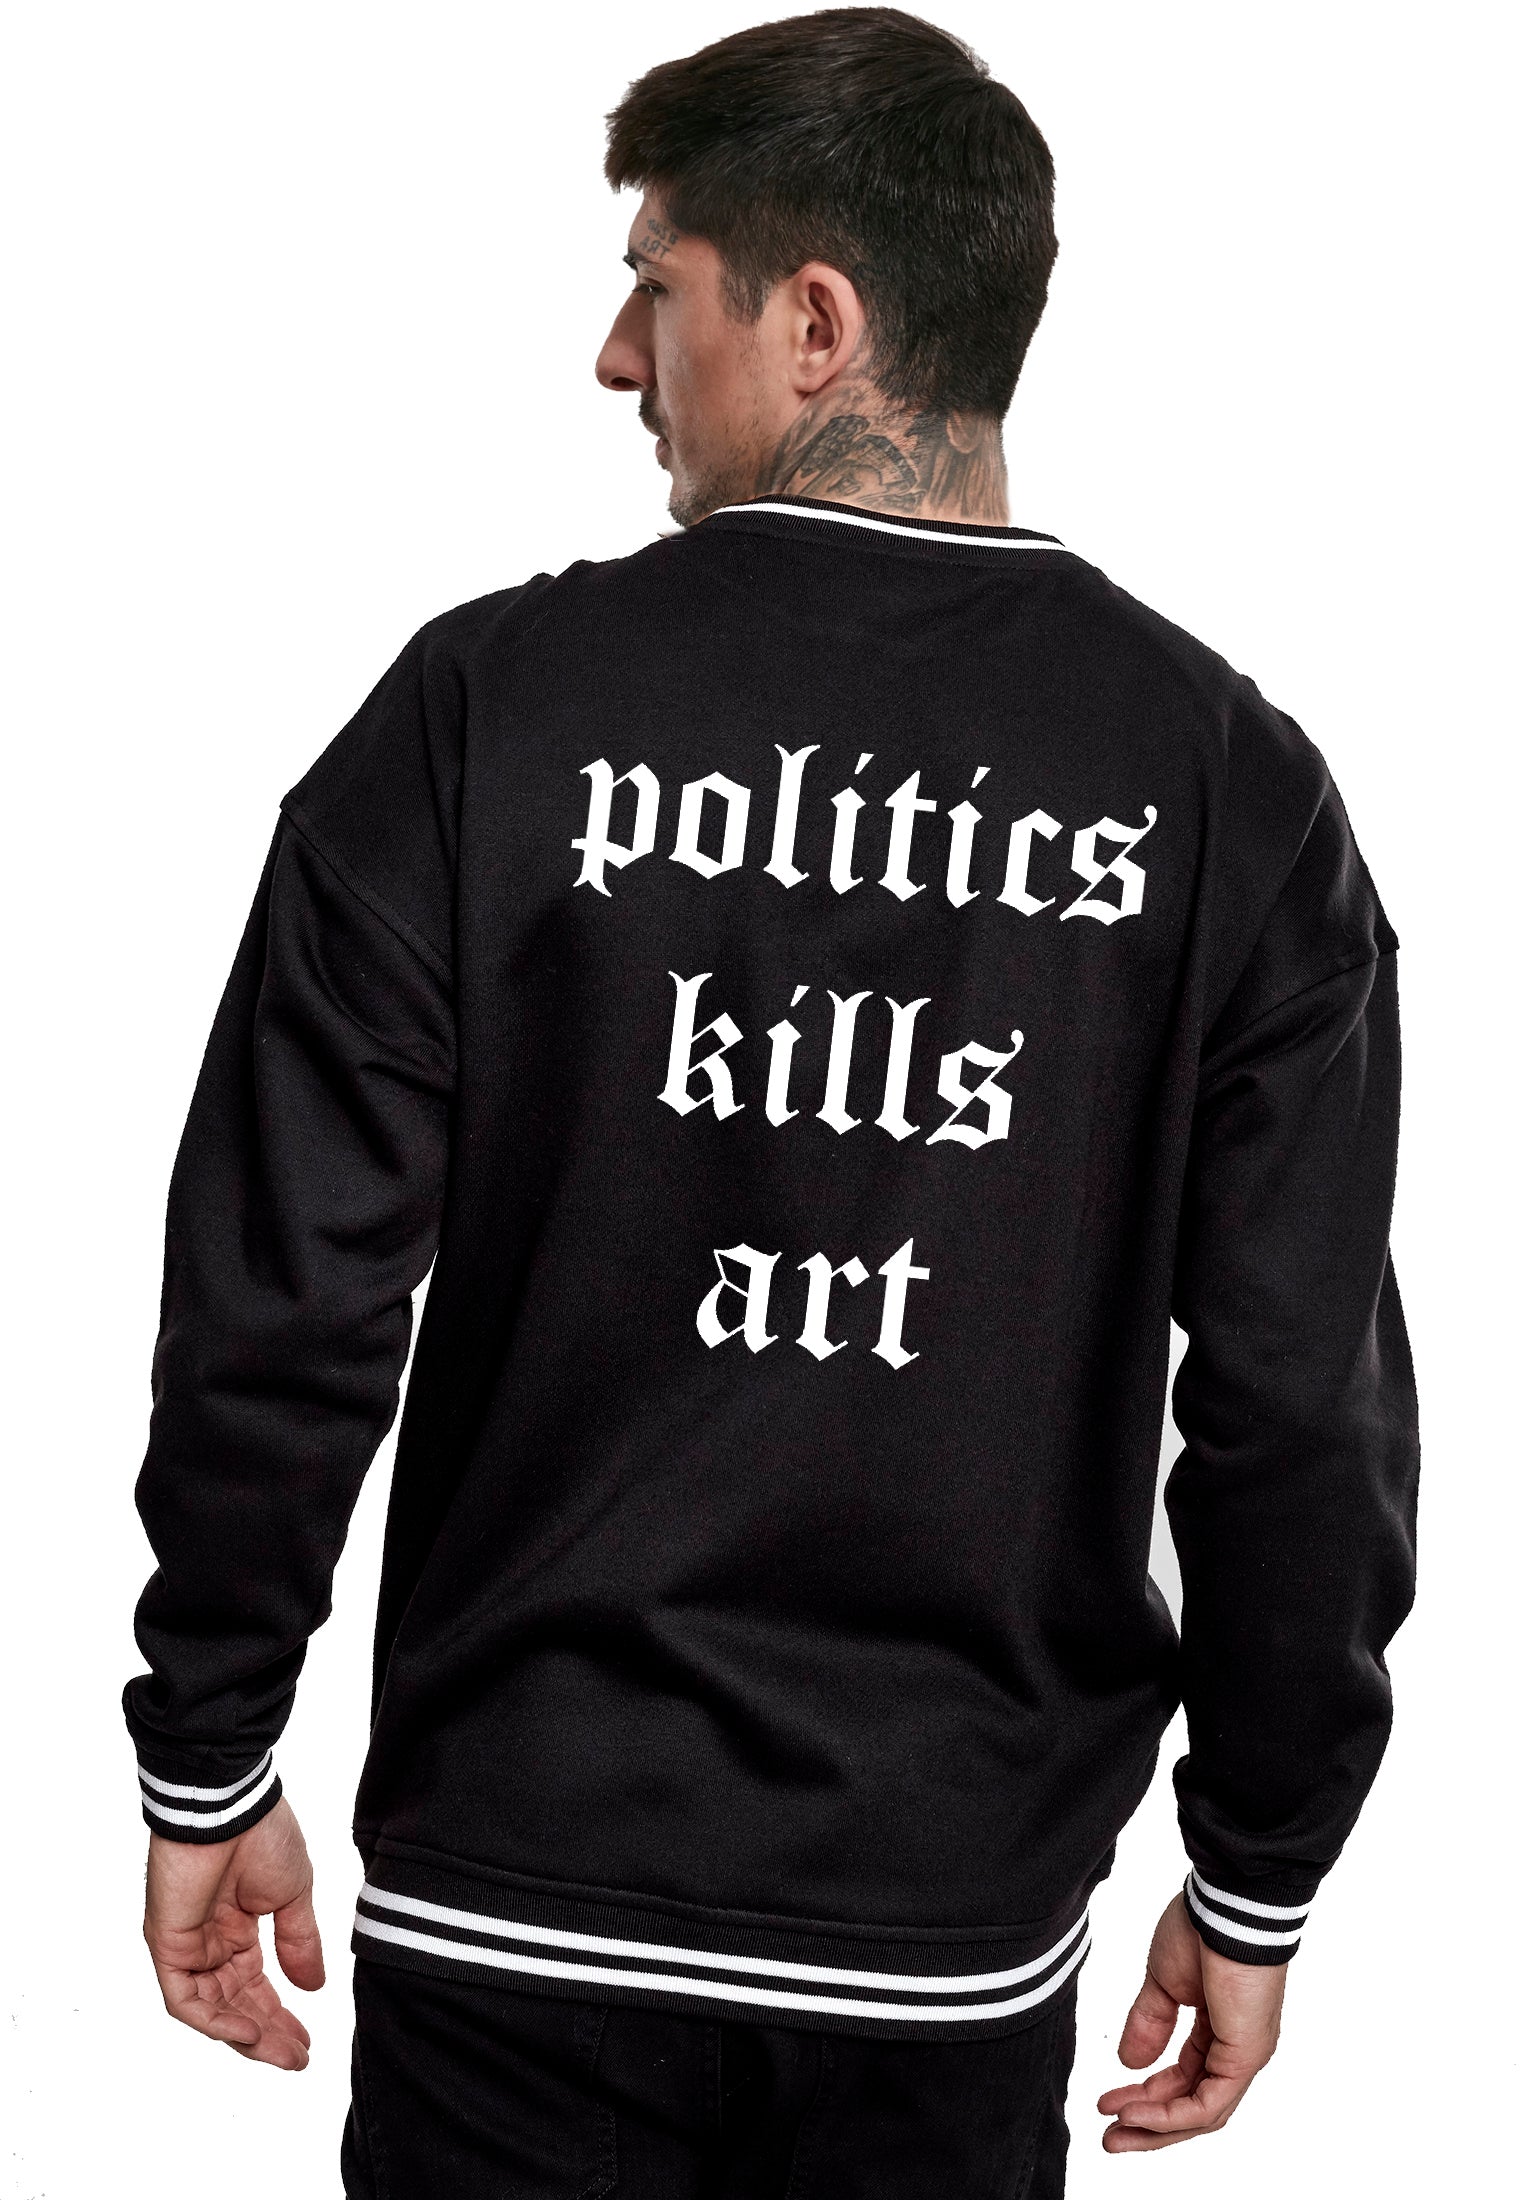 politics kills art Crewneck